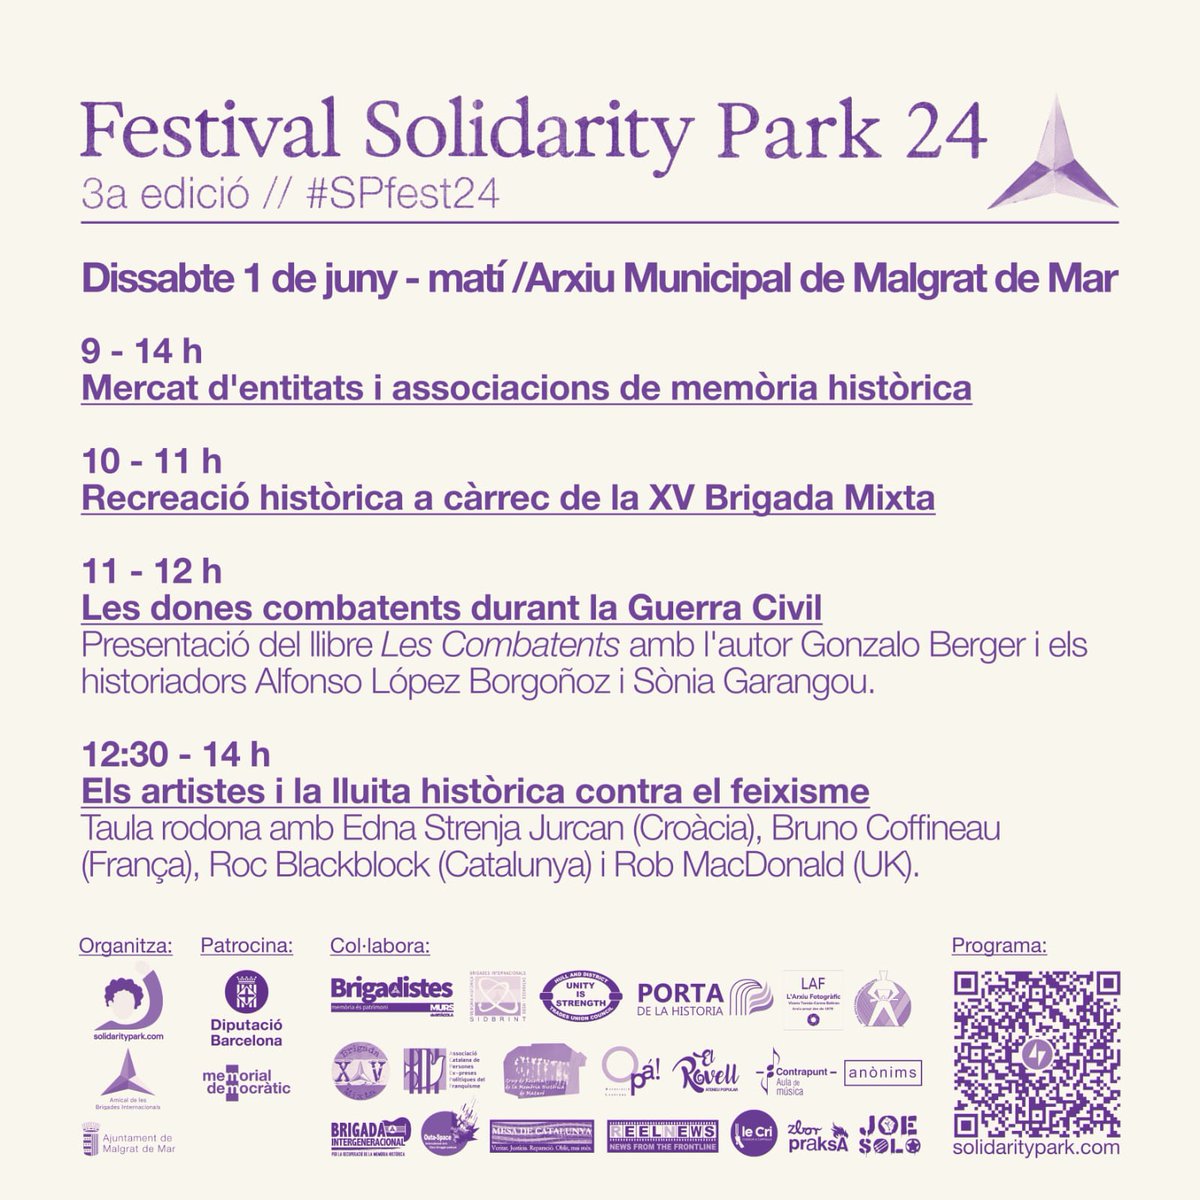 Dissabte 1 de juny al matí al festival del Solidarity Park #SPfest24